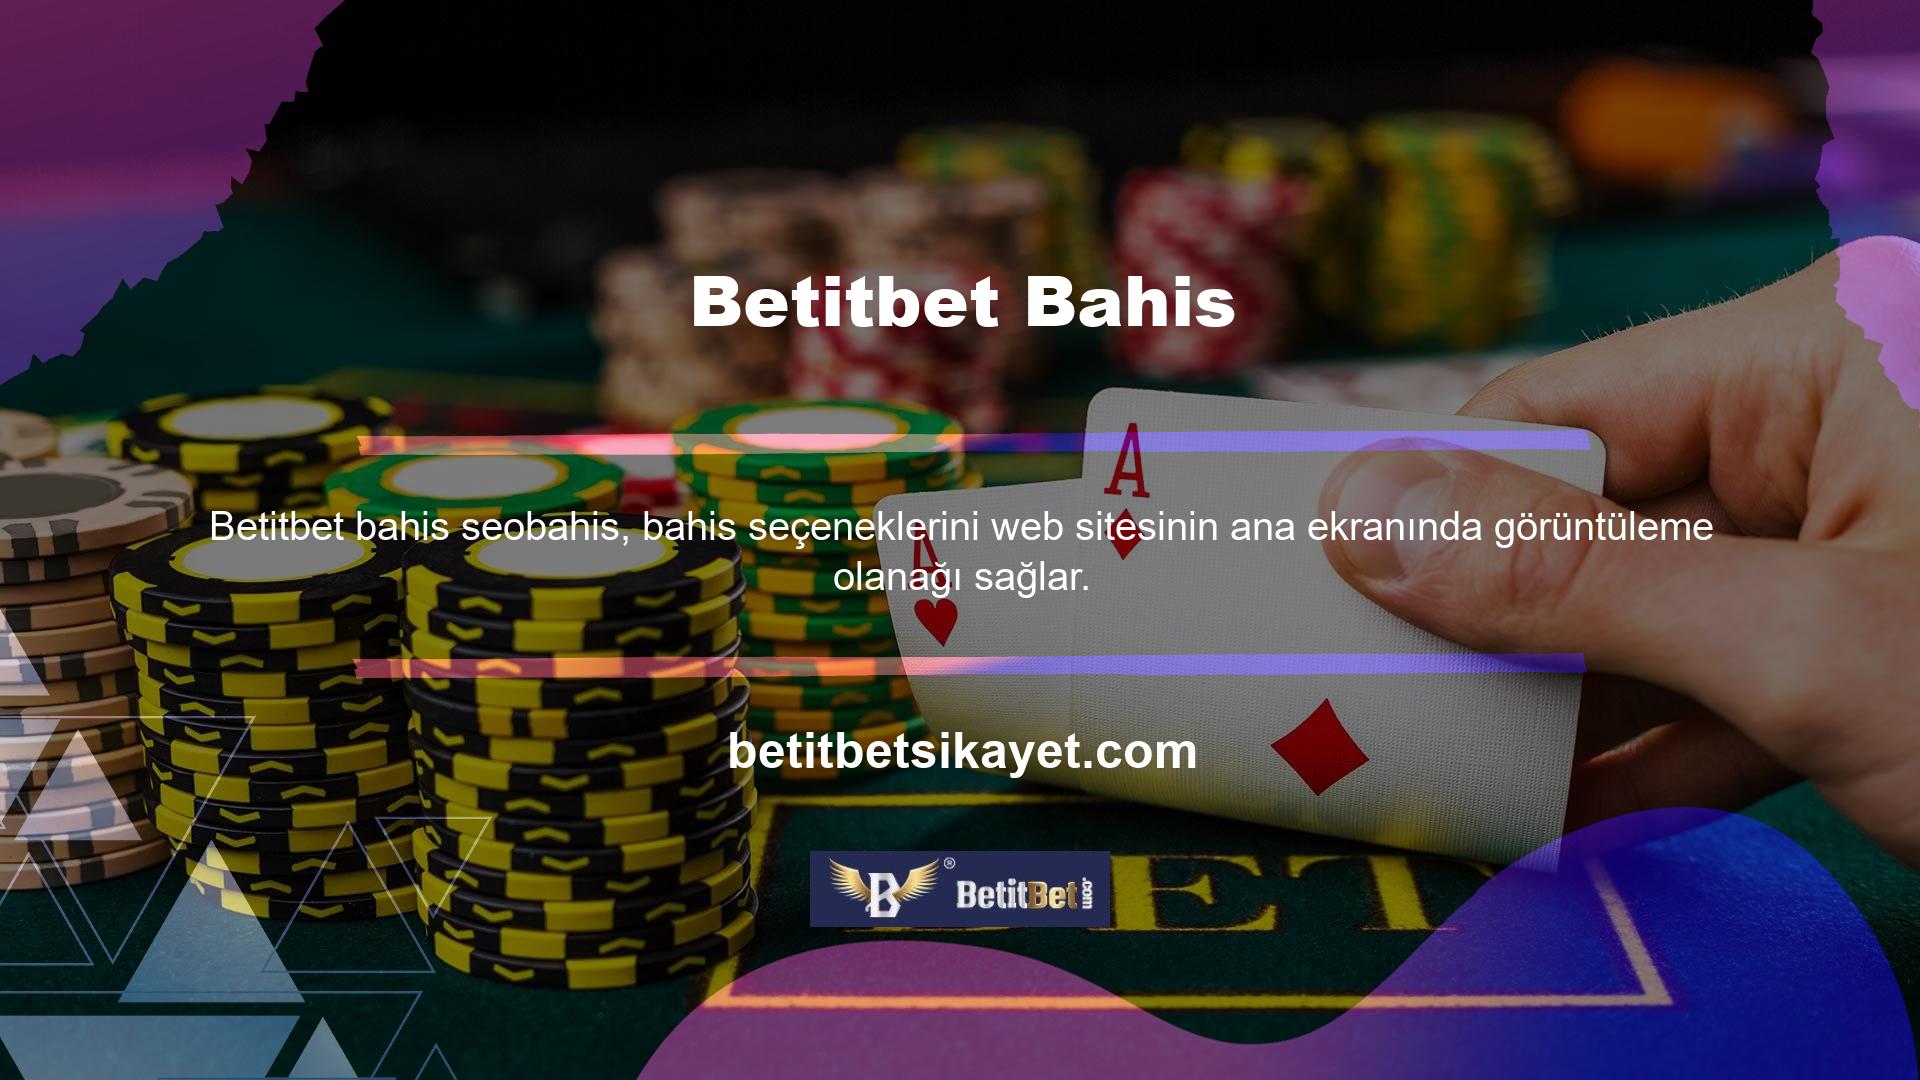 Site, kullanıcılara çeşitli casino seçenekleri aracılığıyla çevrimiçi casinoların heyecanını sunuyor